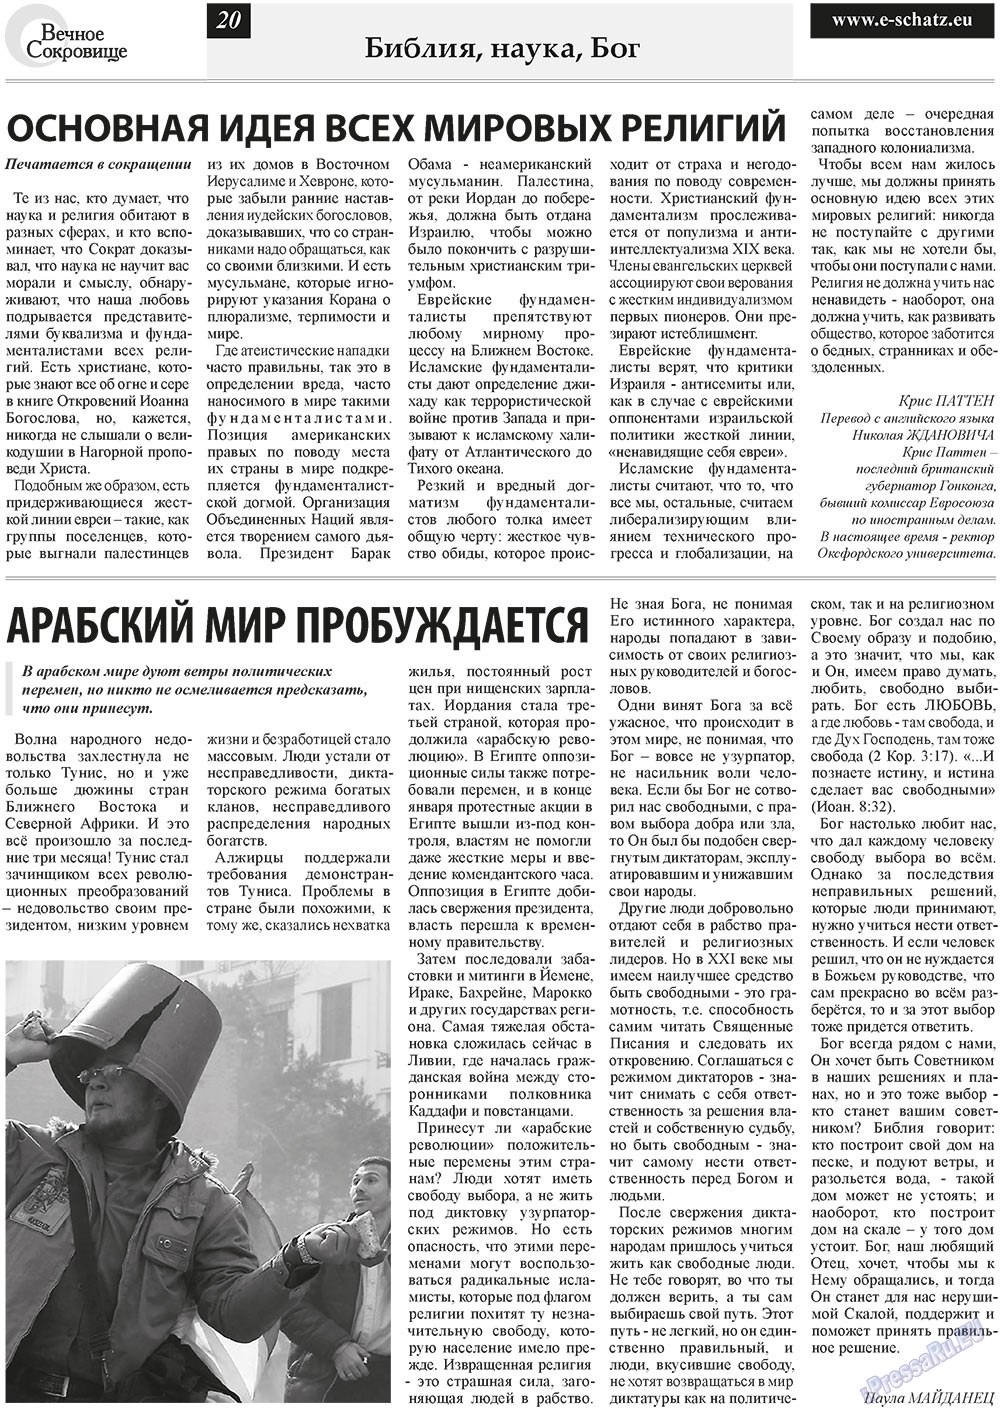 Вечное сокровище, газета. 2011 №2 стр.20